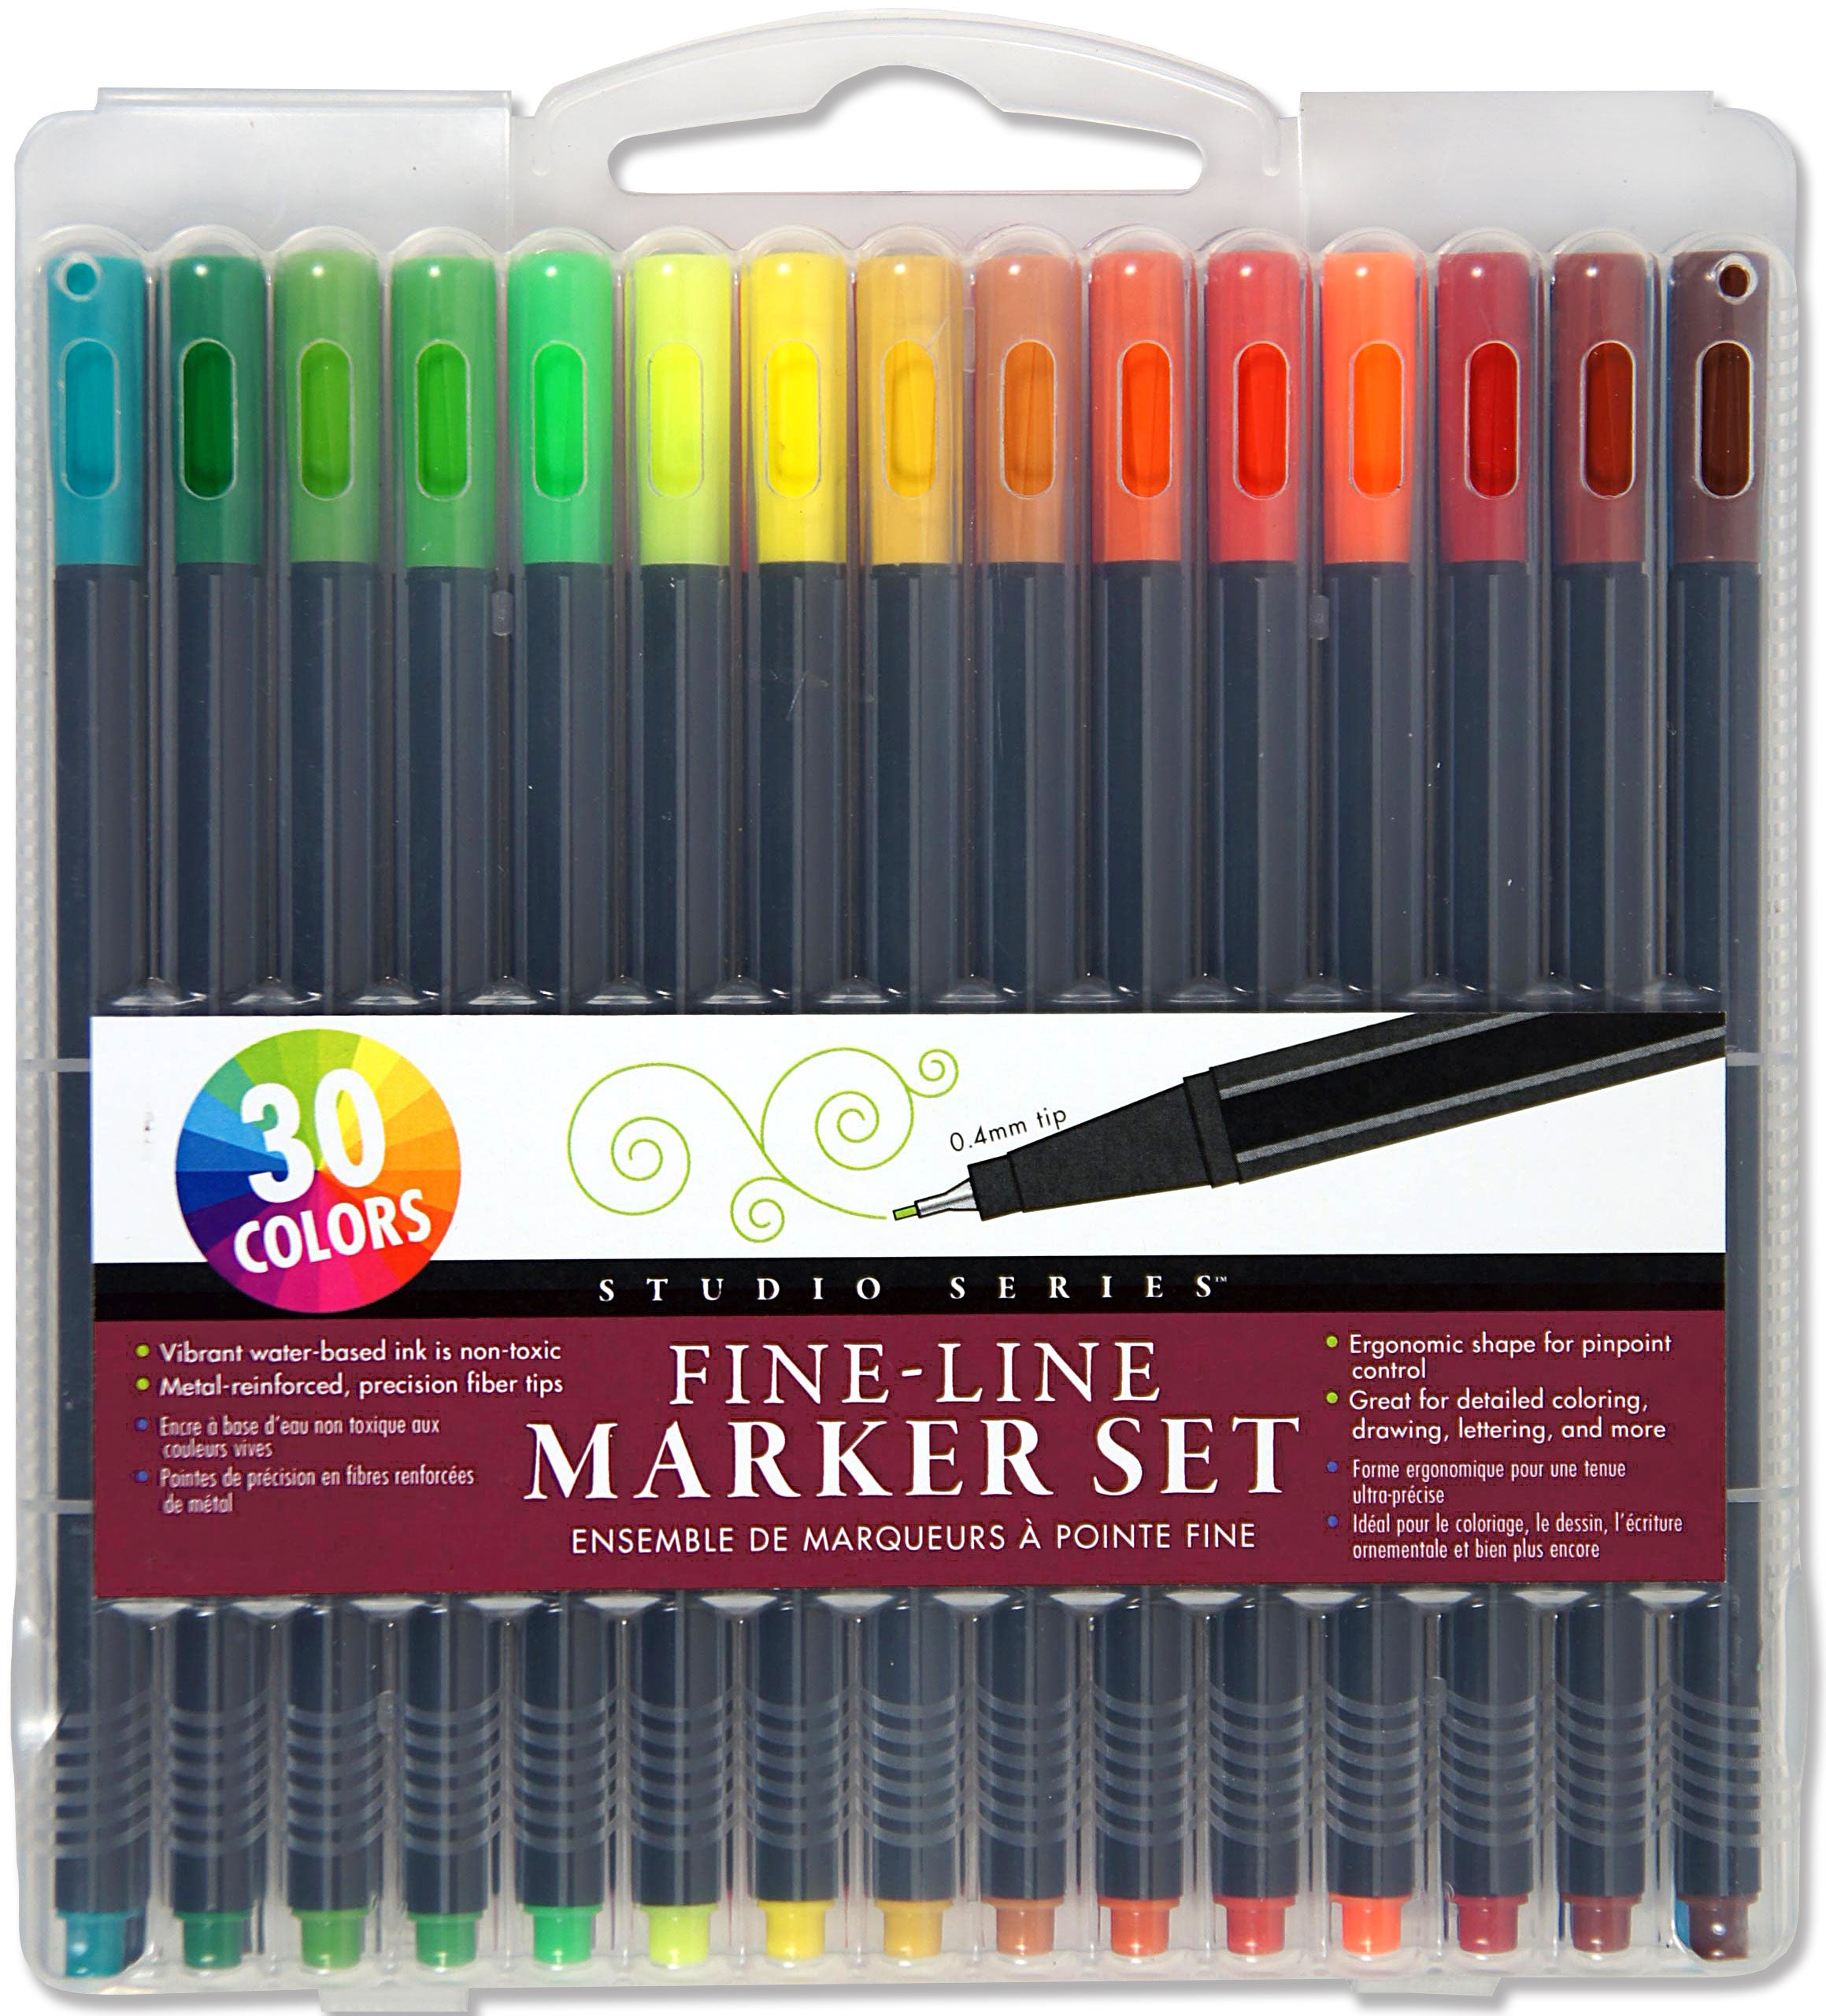 Studio Series - Fine Line Marker Set s/30